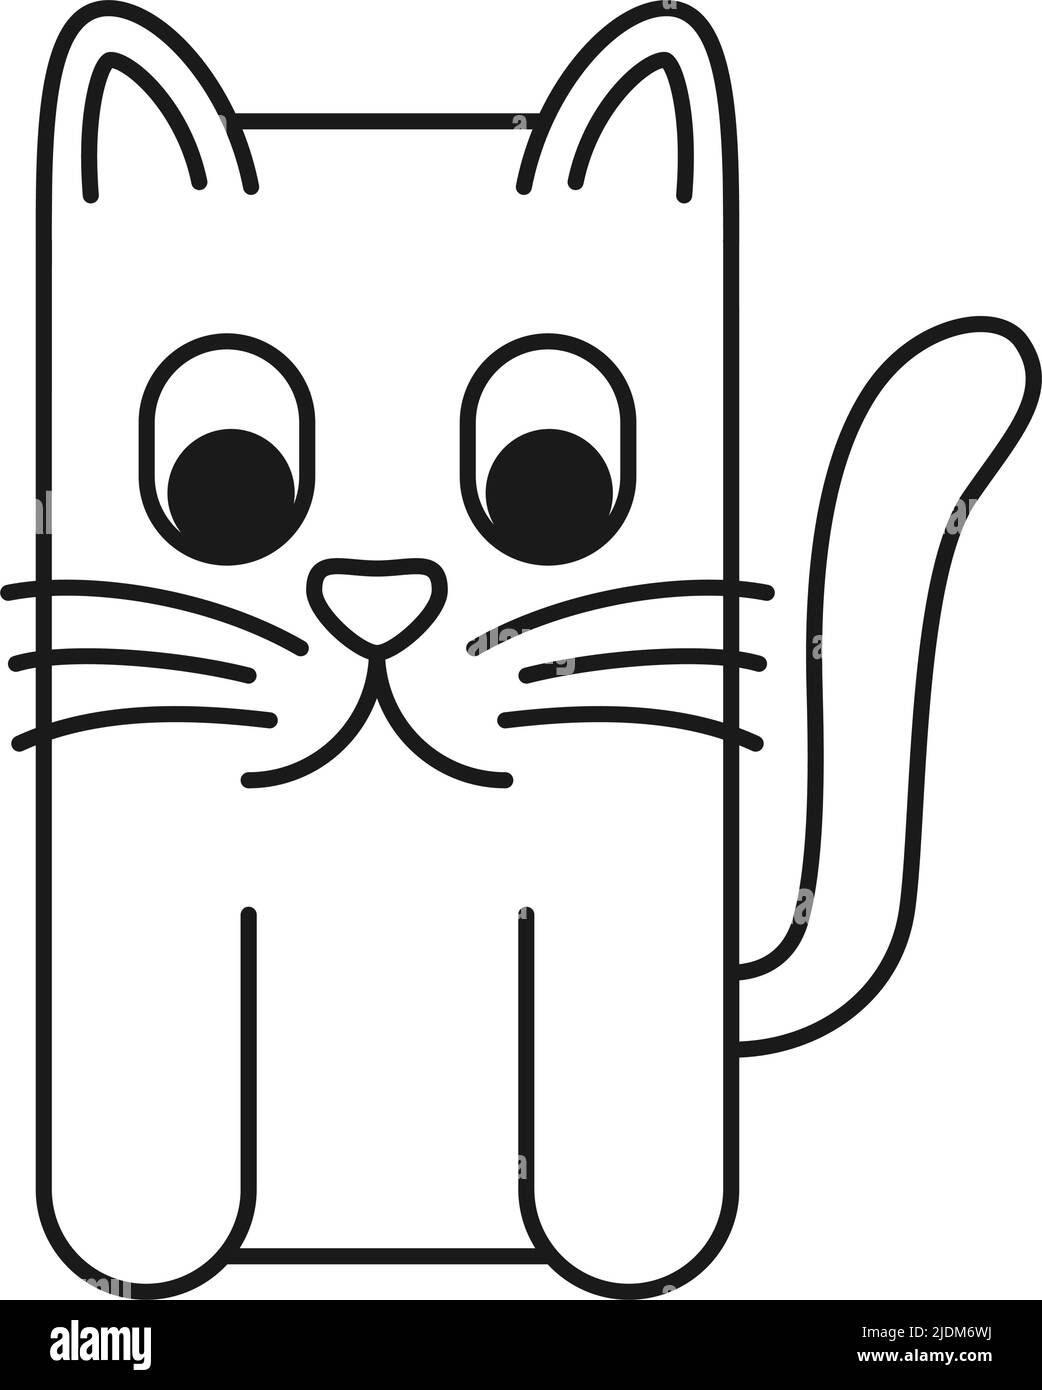 Dessin au trait noir et blanc géométrique stylisé chat dessin animé national animal. Illustration vectorielle sur le thème d'un animal pour icône, tampon, étiquette, badge, autocollant, cadeau c Illustration de Vecteur